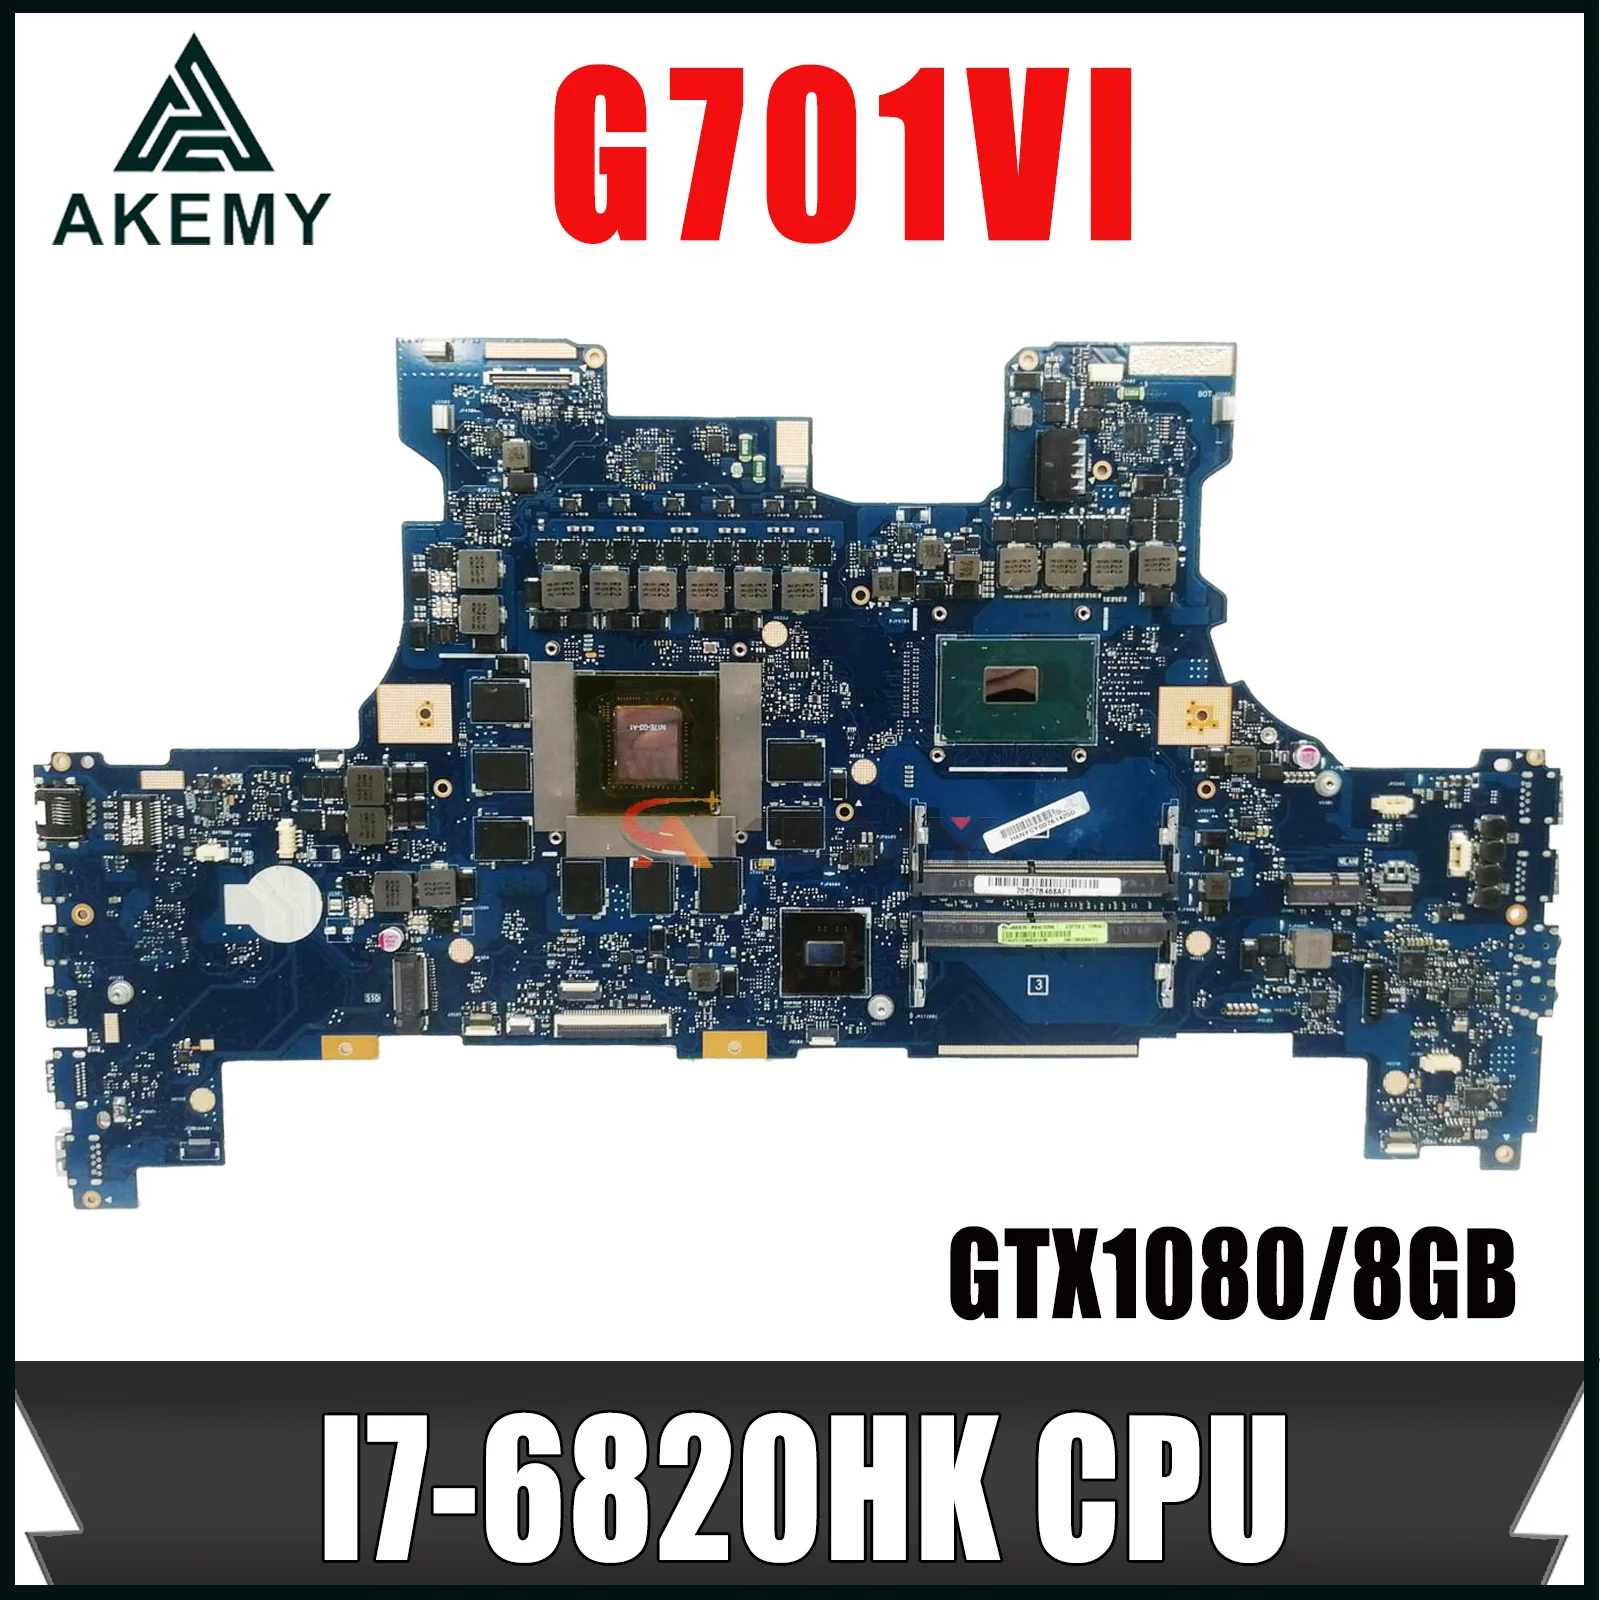 

G701V I7-6820HK CPU GTX1080/8GB Notebook Mainboard For ASUS G701VI ROG G701 G701VIK Laptop Motherboard Main Board TEST OK DDR4